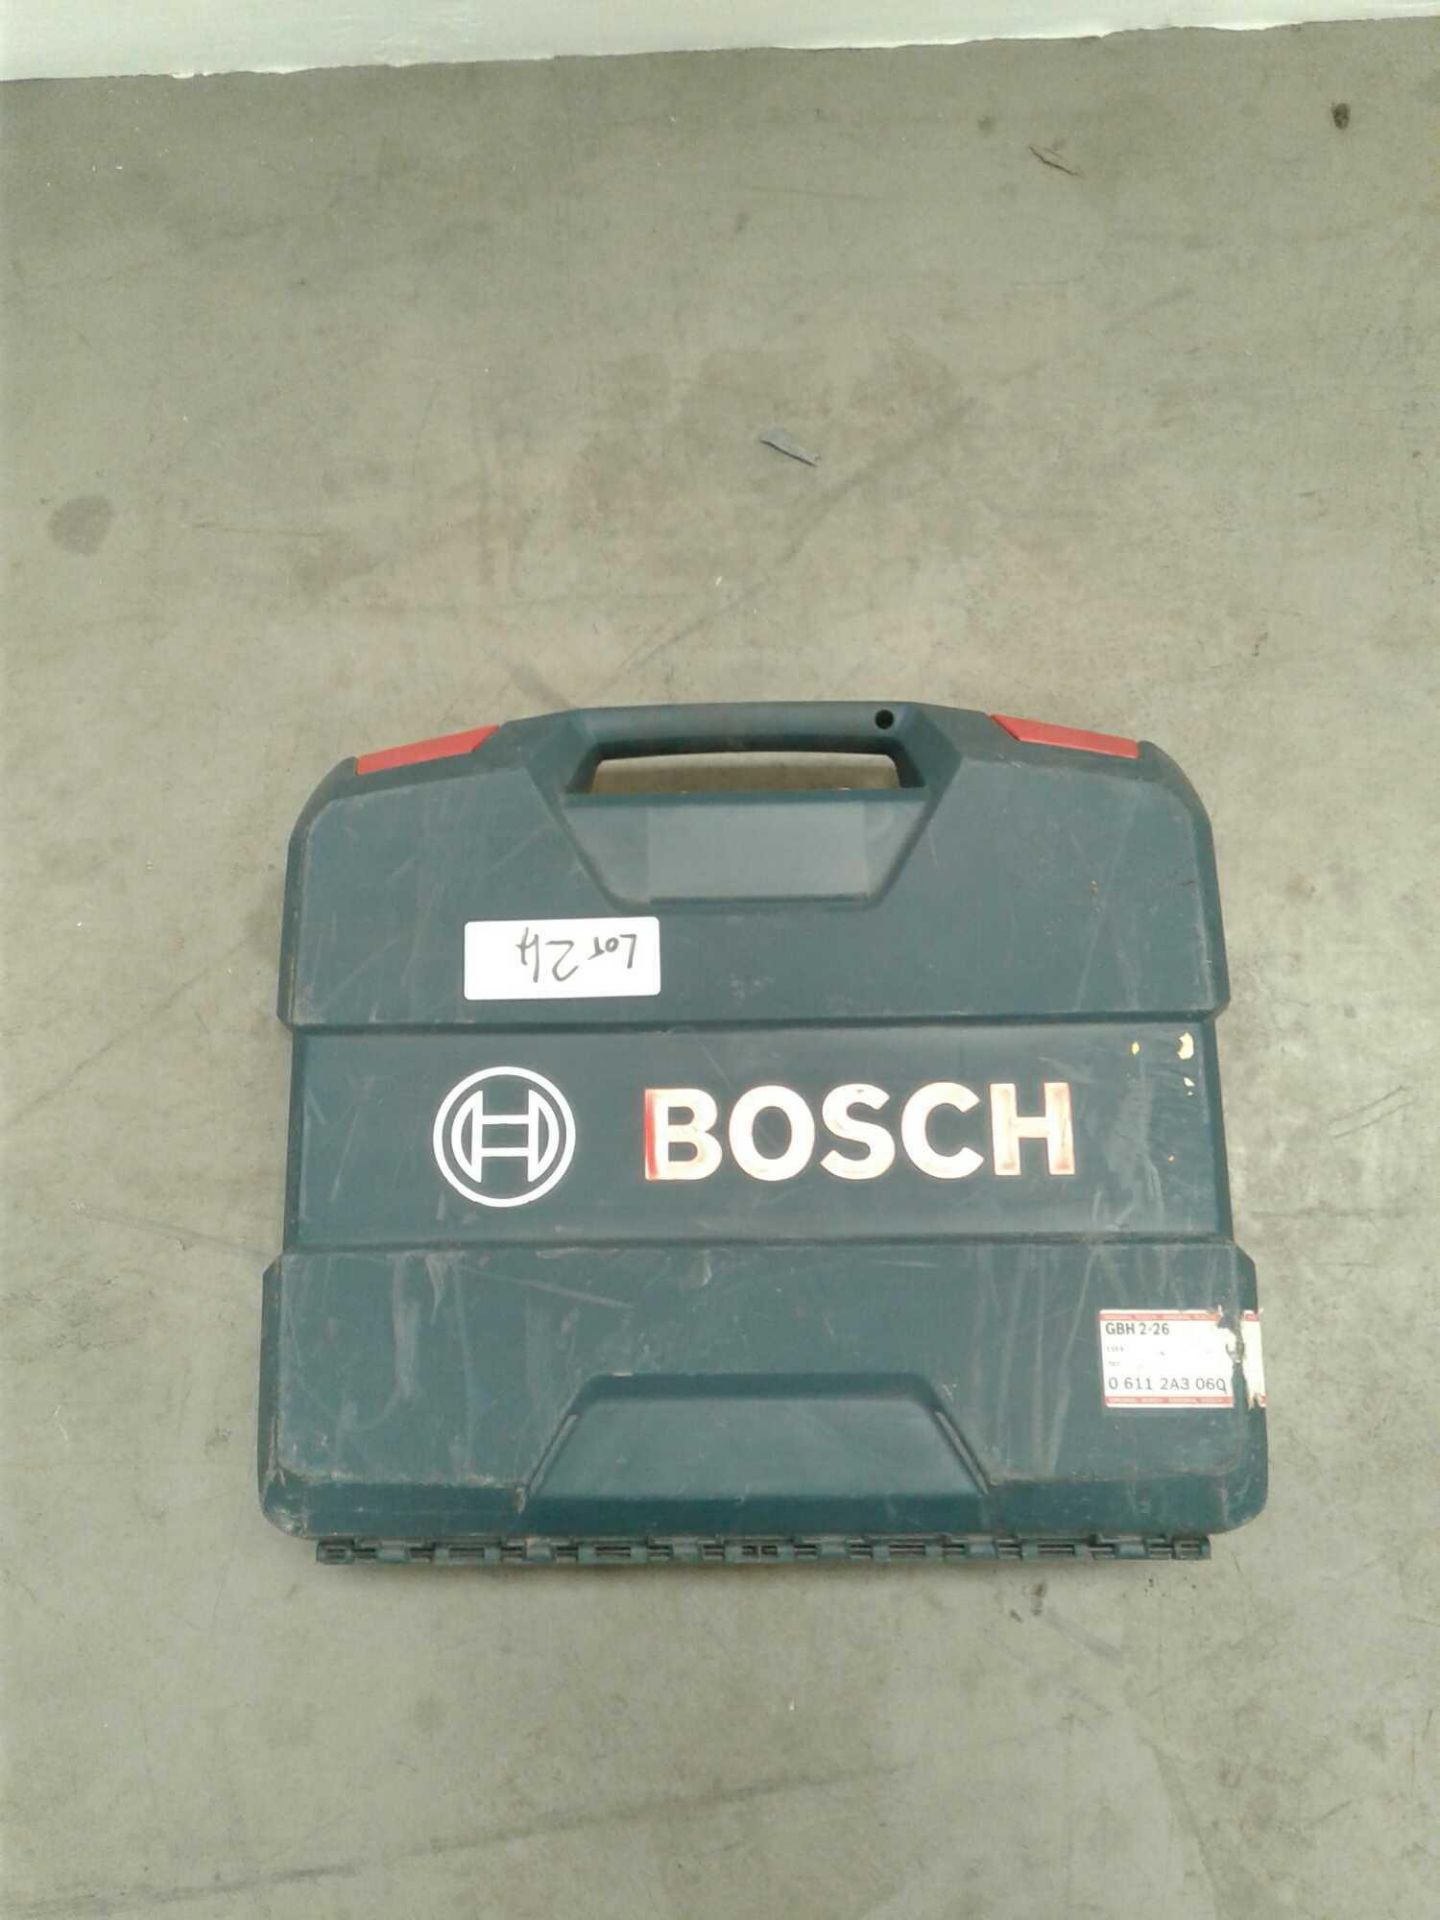 Bosch hammer drill 110v - Image 5 of 5